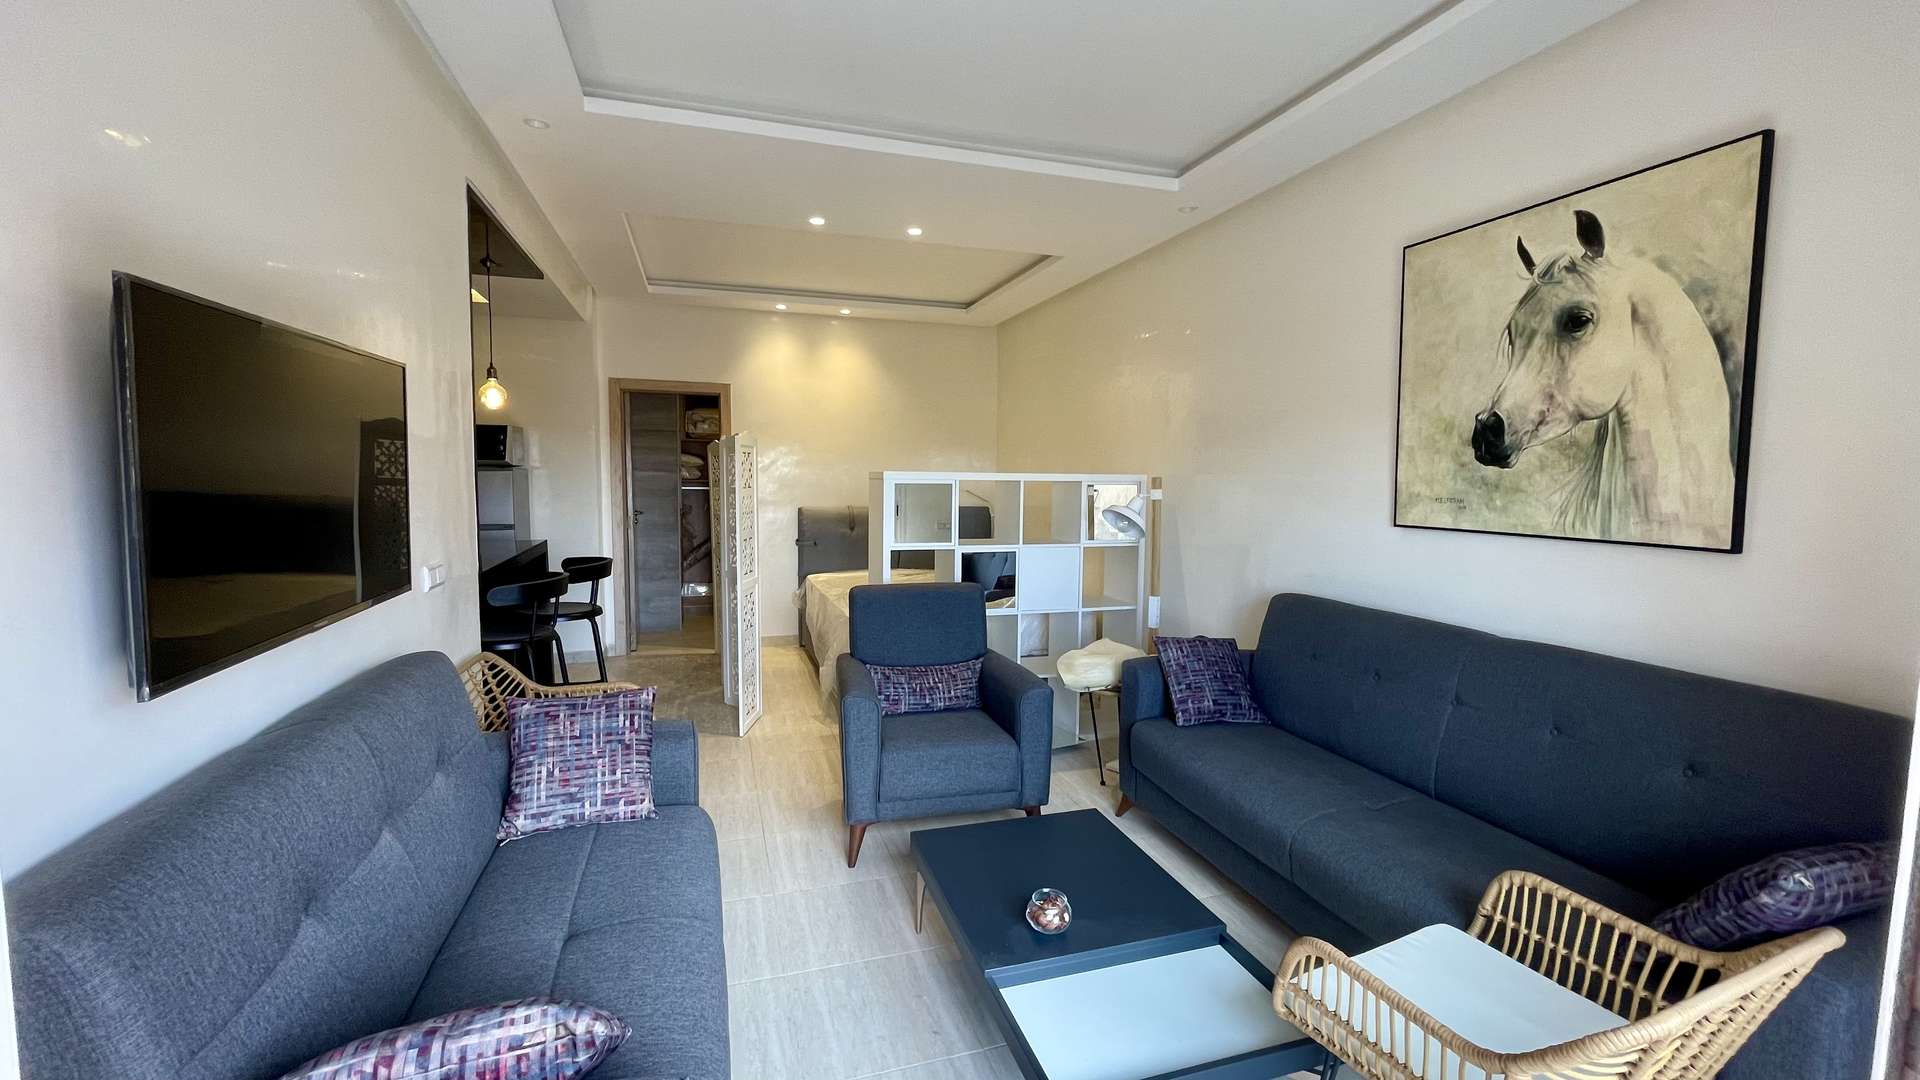 Location longue durée ,Appartement,Studio Neuf en plein centre de Guéliz proposé à la location longue durée,Marrakech,Guéliz